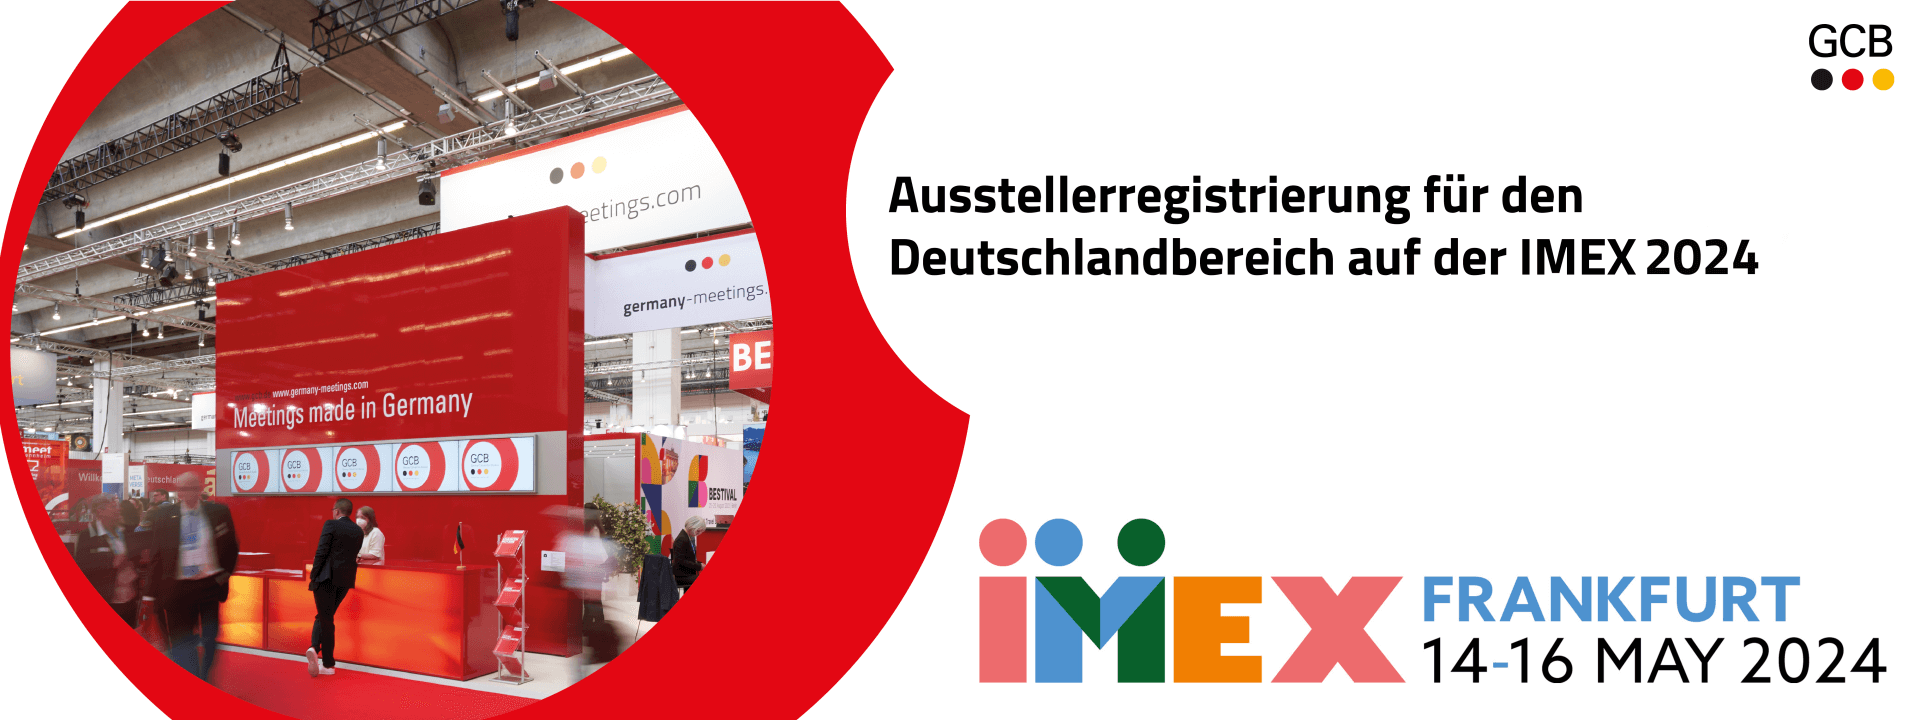 IMEX Frankfurt 2024 Beteiligungsmöglichkeiten idloom.events